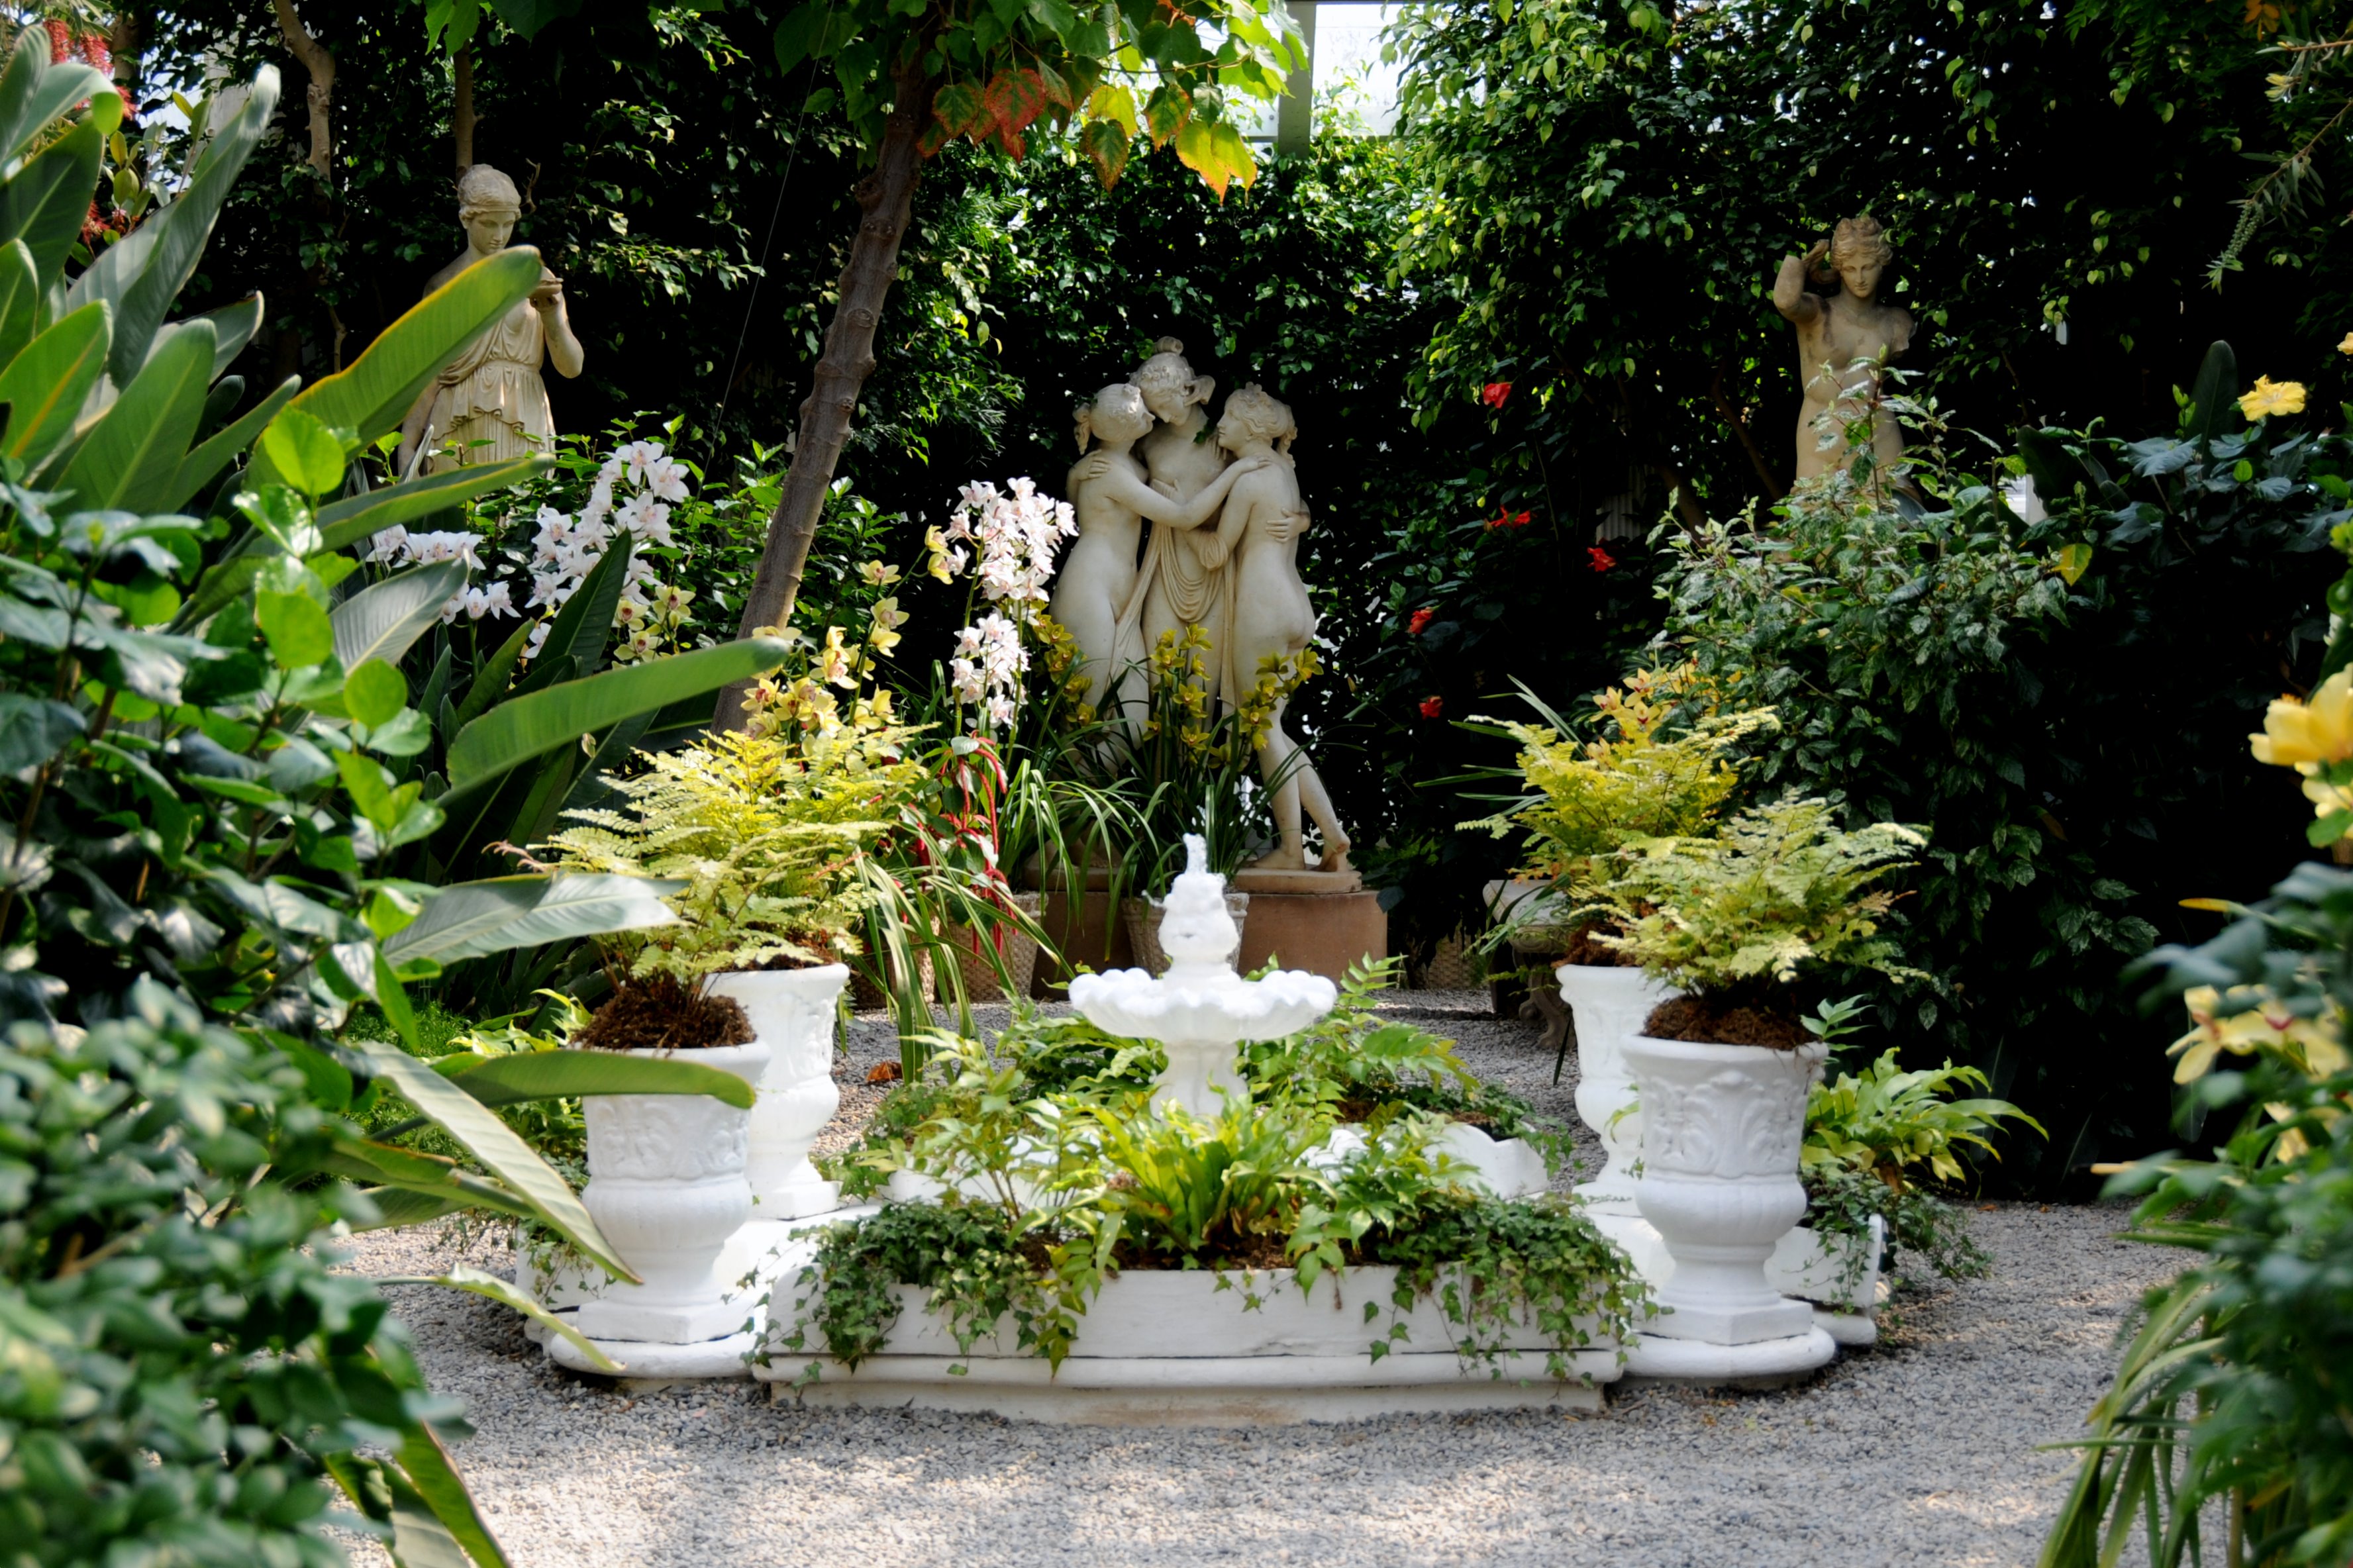 FileItalian Garden At Duke Gardensjpg Wikimedia Commons